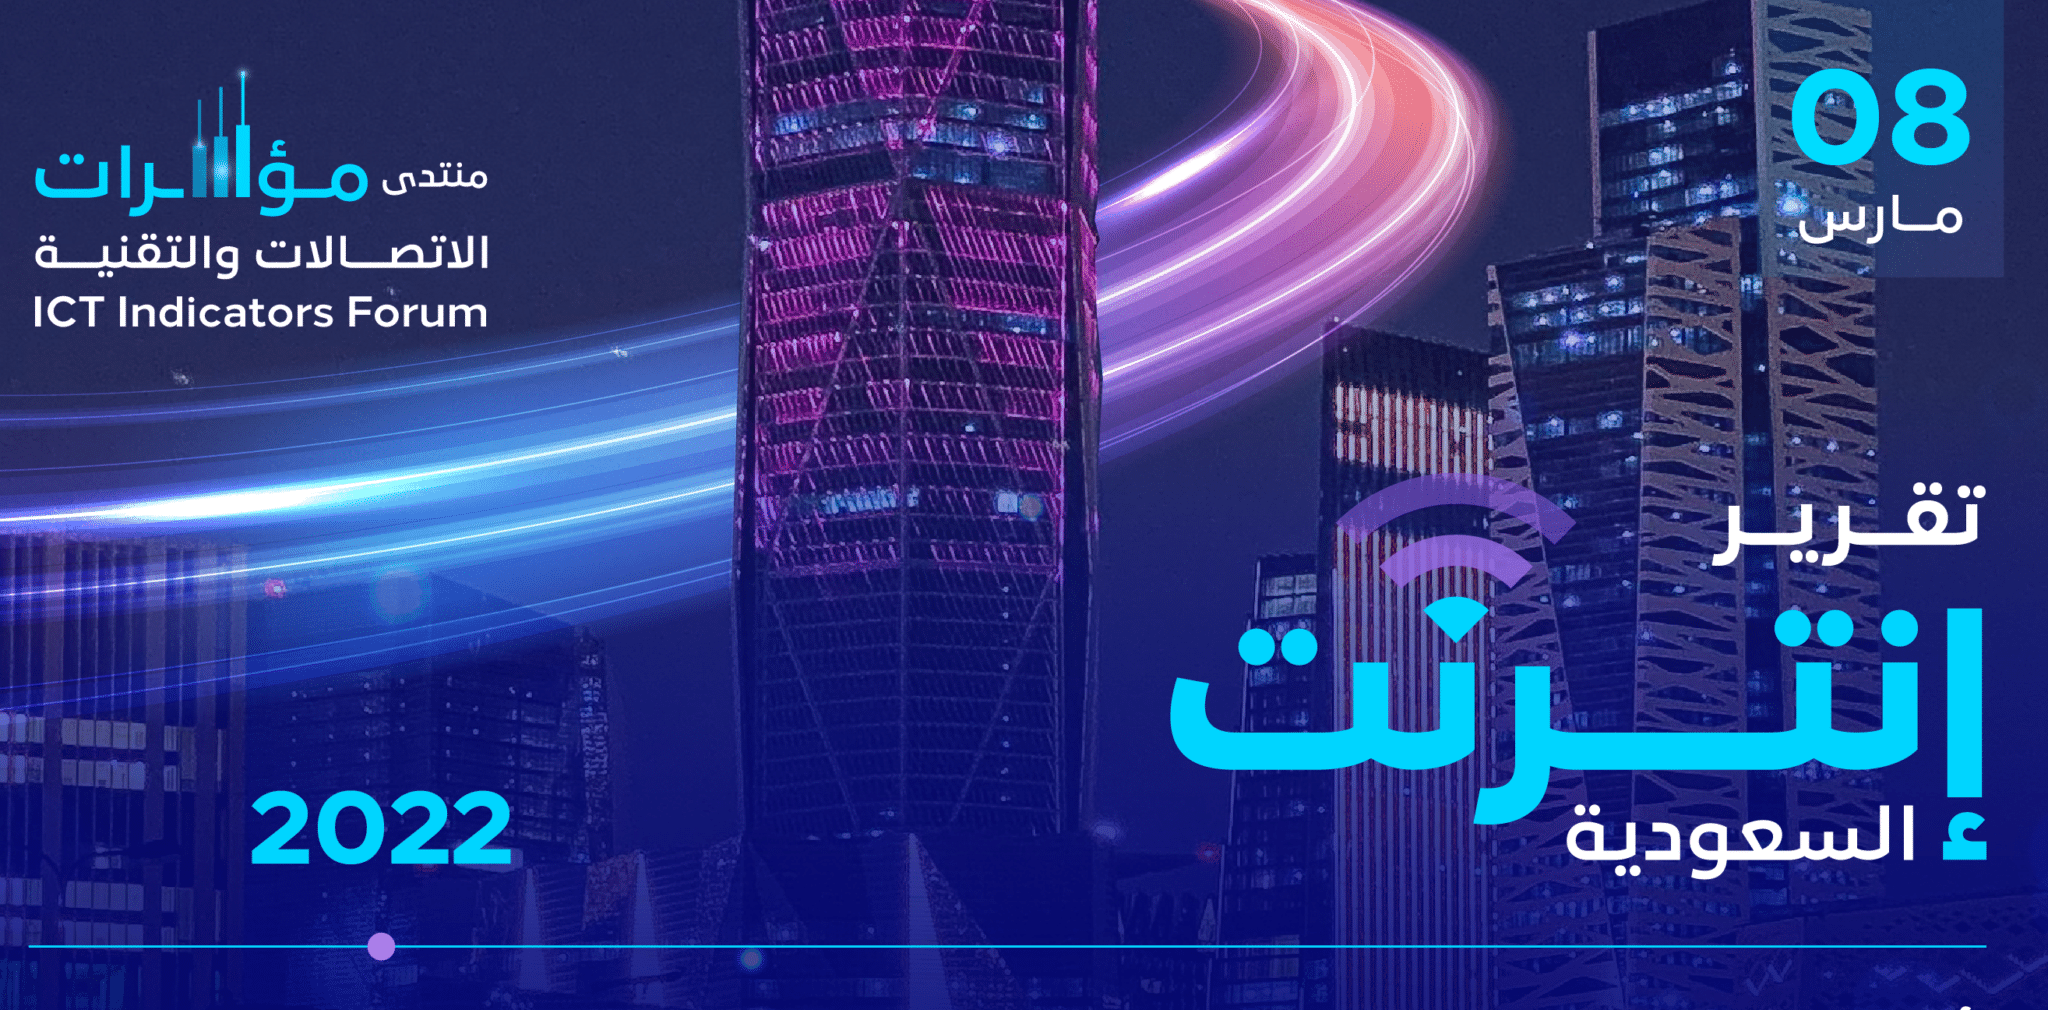 هيئة الاتصالات والفضاء والتقنية تصدر تقرير «إنترنت السعودية»